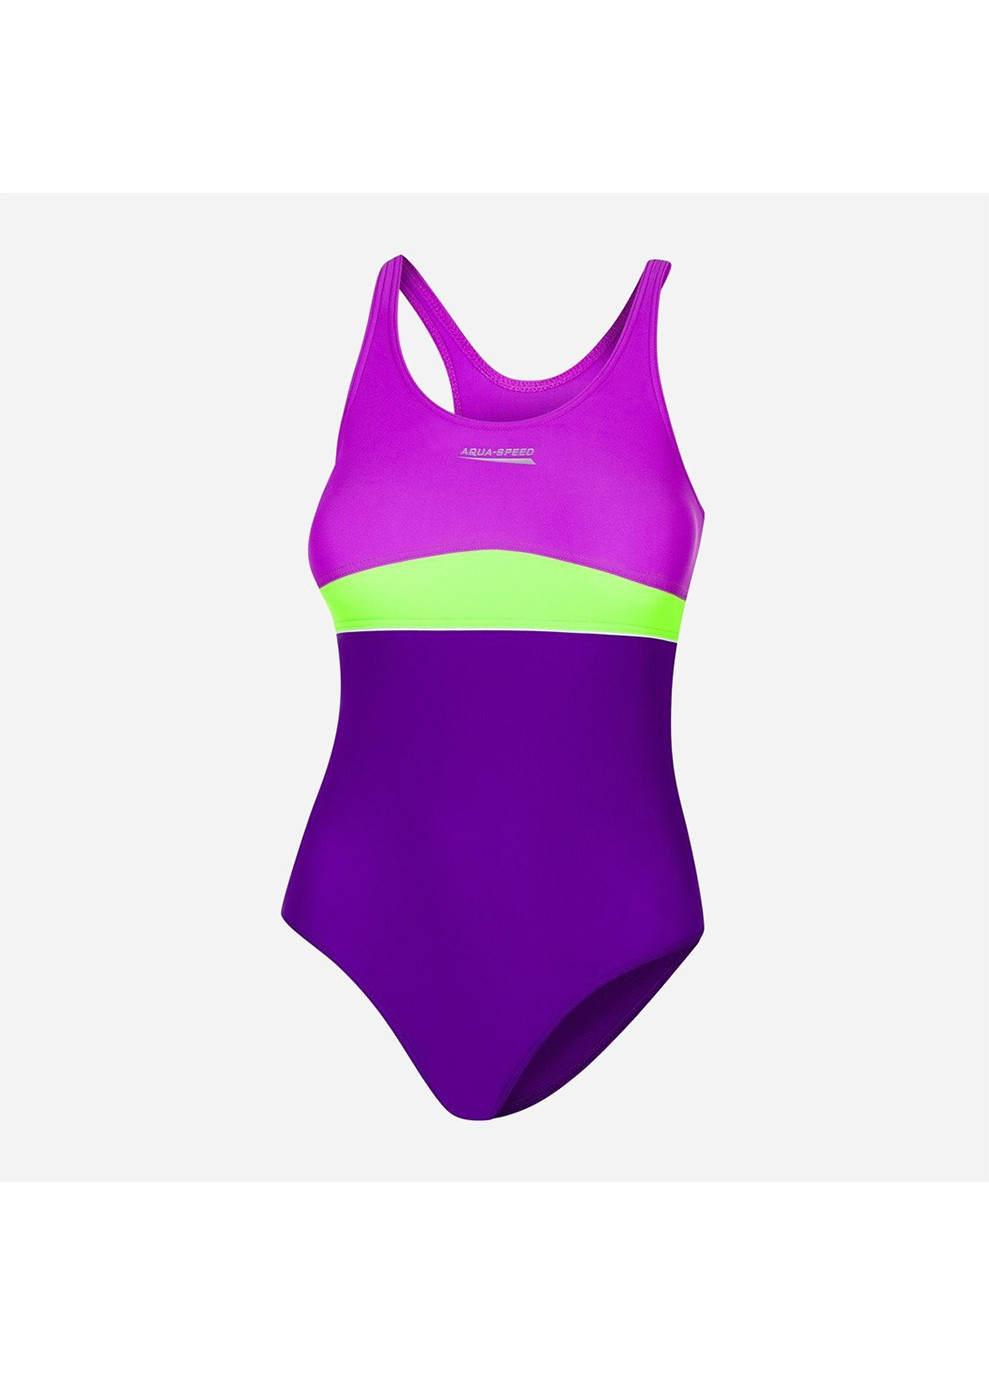 Фиолетовый демисезонный купальник слитный emily 7453 (367-48) 122 см фиолетовый/зеленый/темно-фиолетовый (5908217674531) Aqua Speed